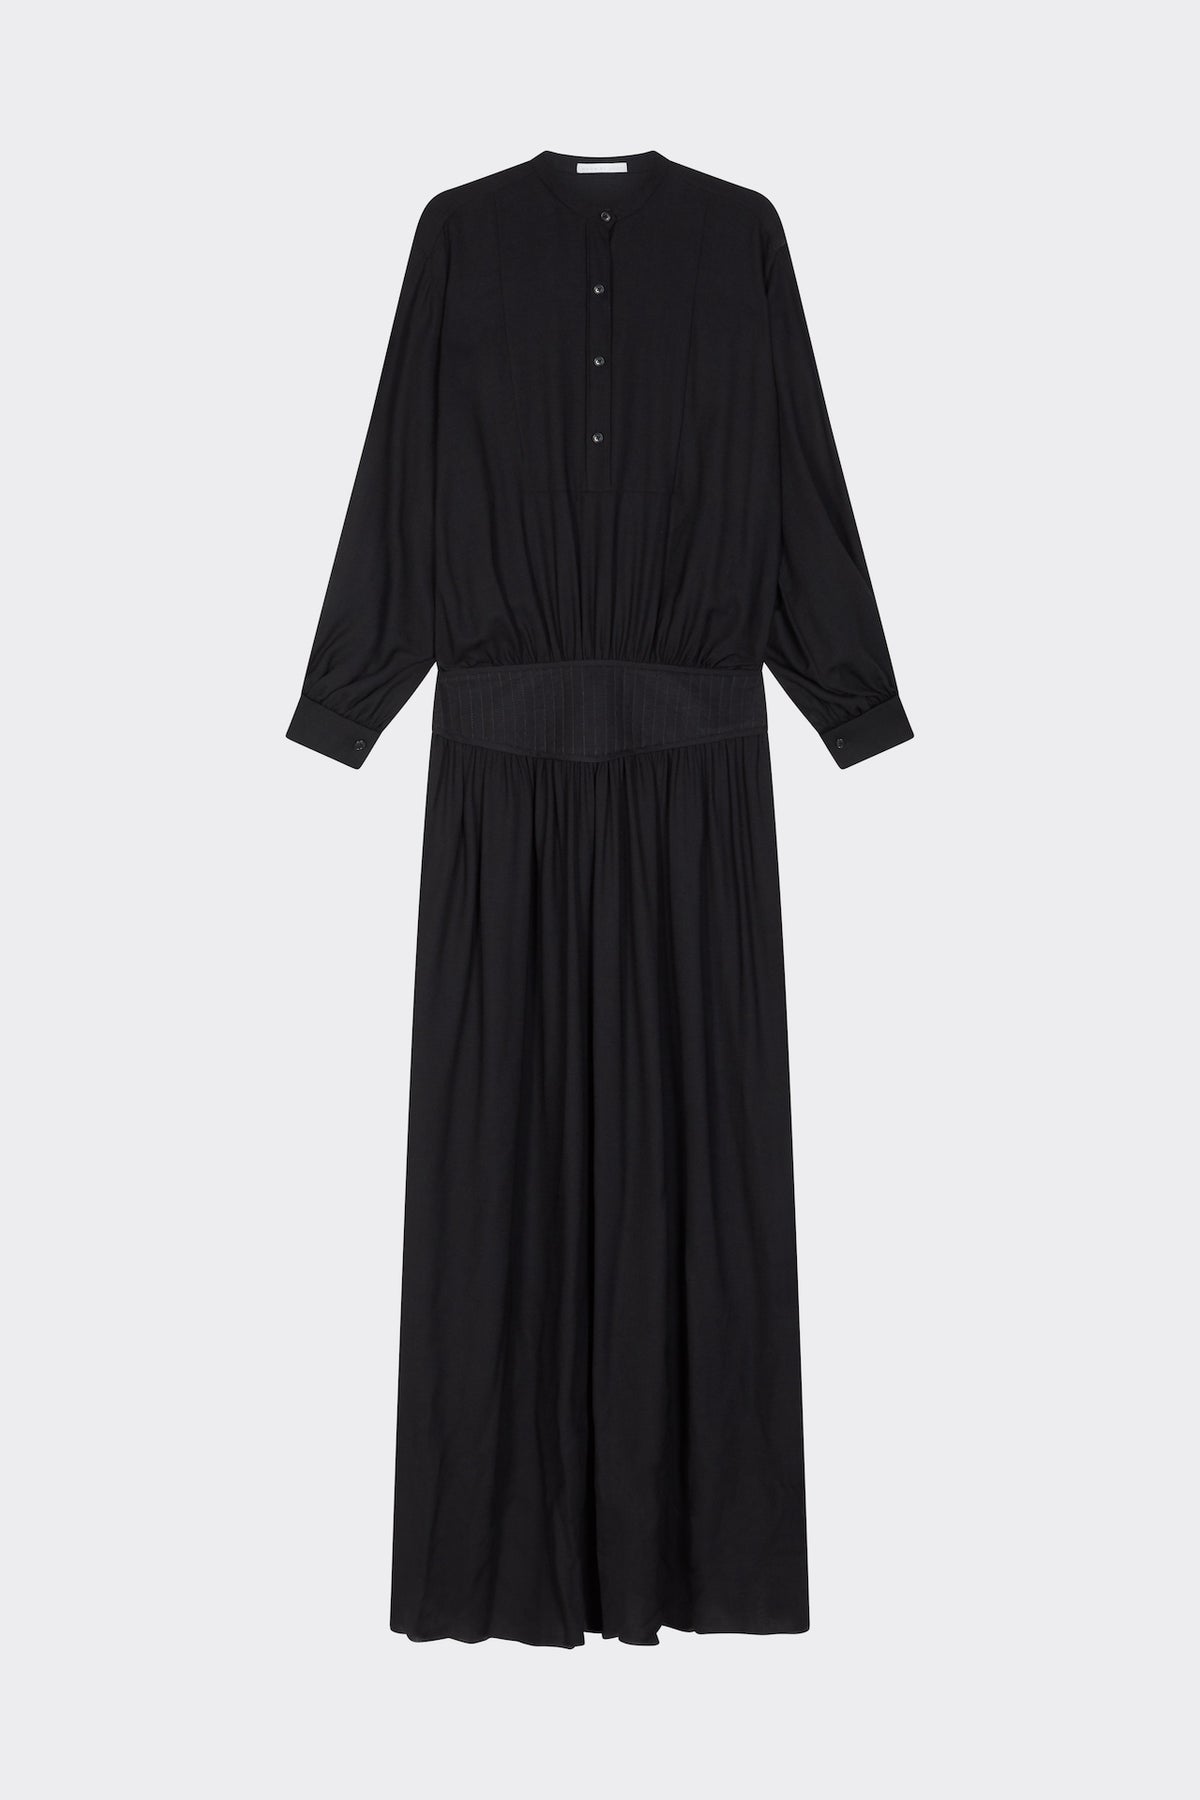 Kristina Dress in Black| Noon by Noor